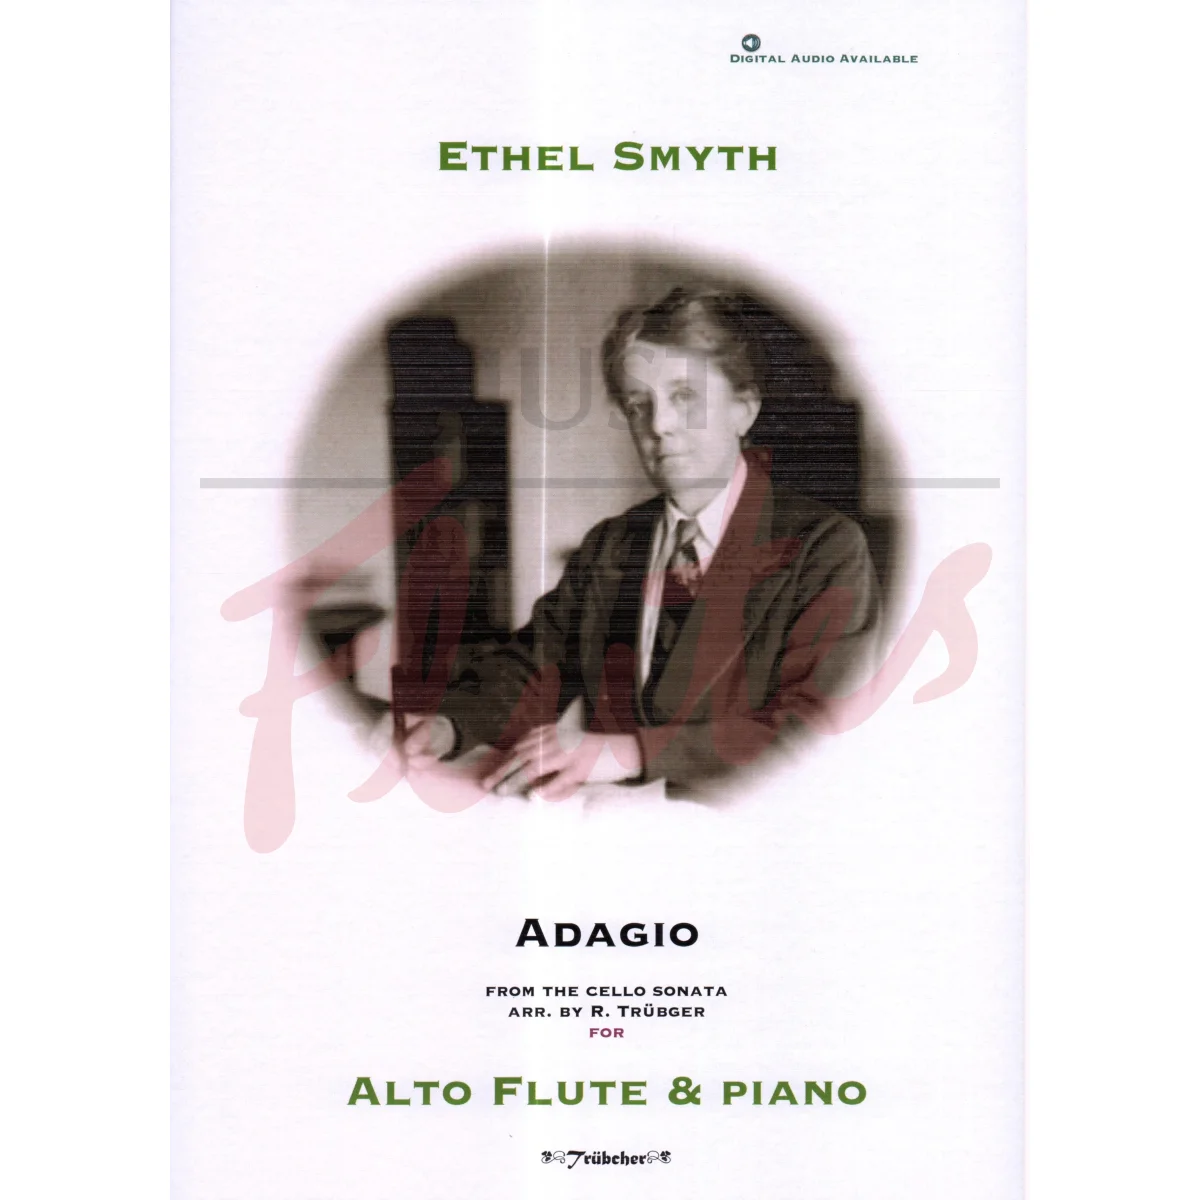 Adagio (from the Cello Sonata) for Alto Flute and Piano